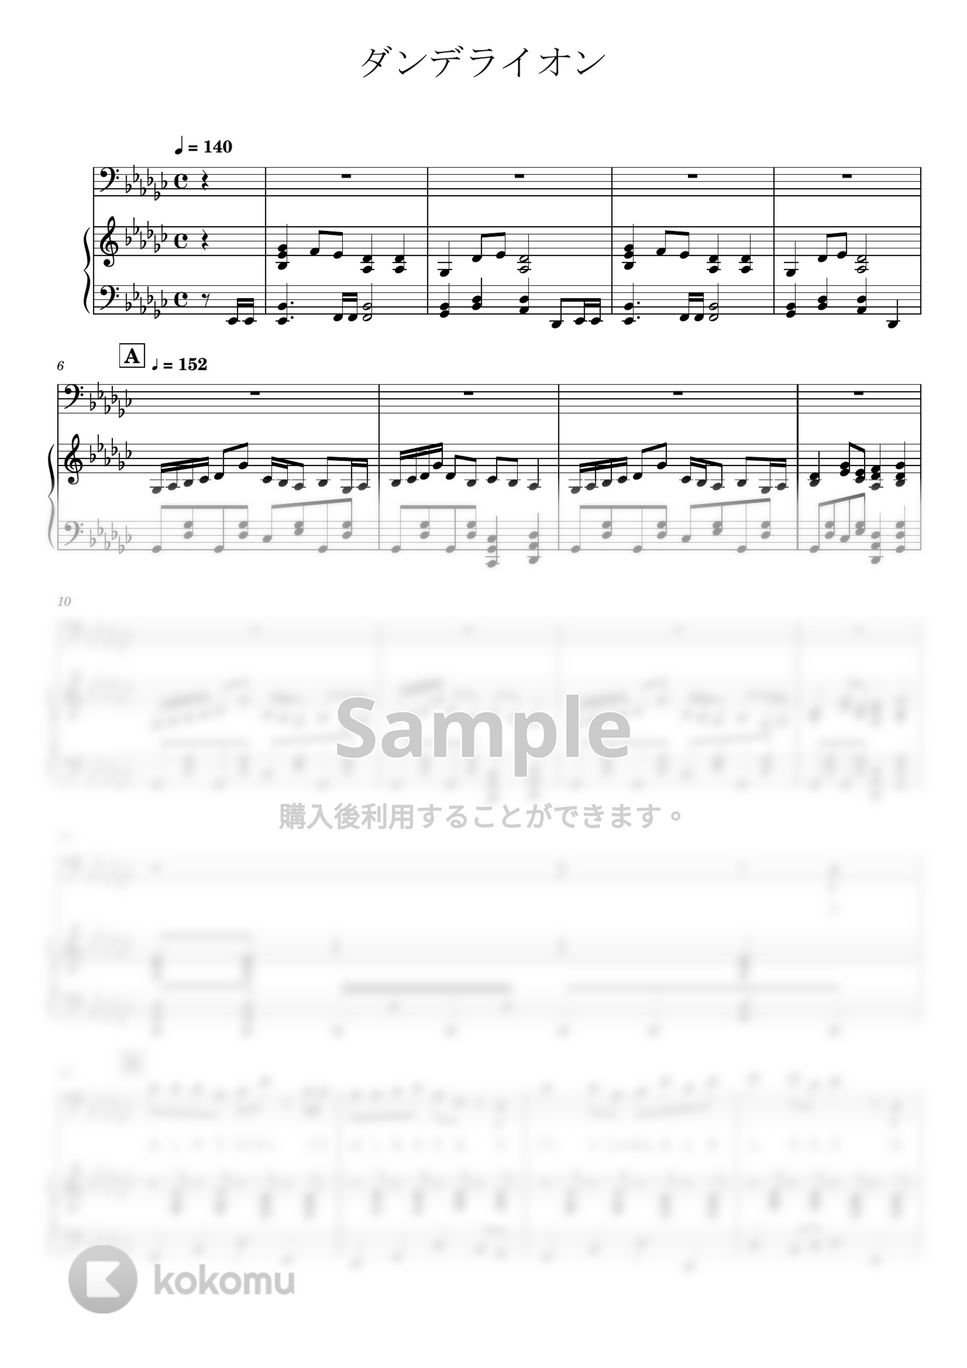 BUMP OF CHICKEN - ダンデライオン (ピアノ弾き語り) by otyazuke